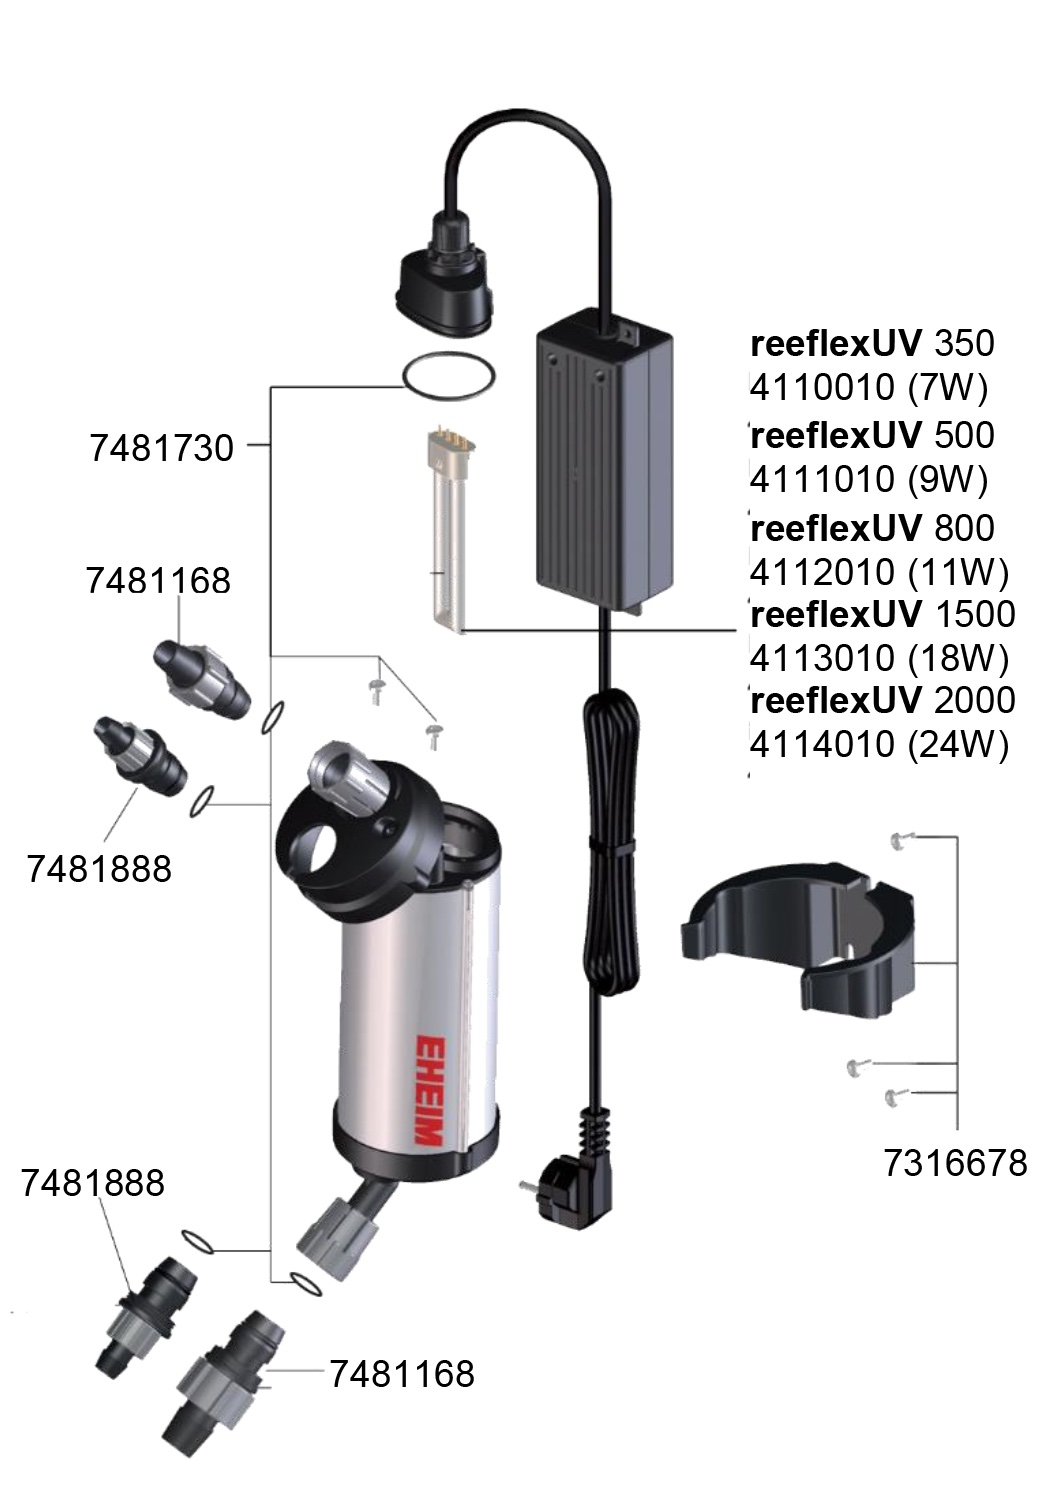 reeflexUV 1500